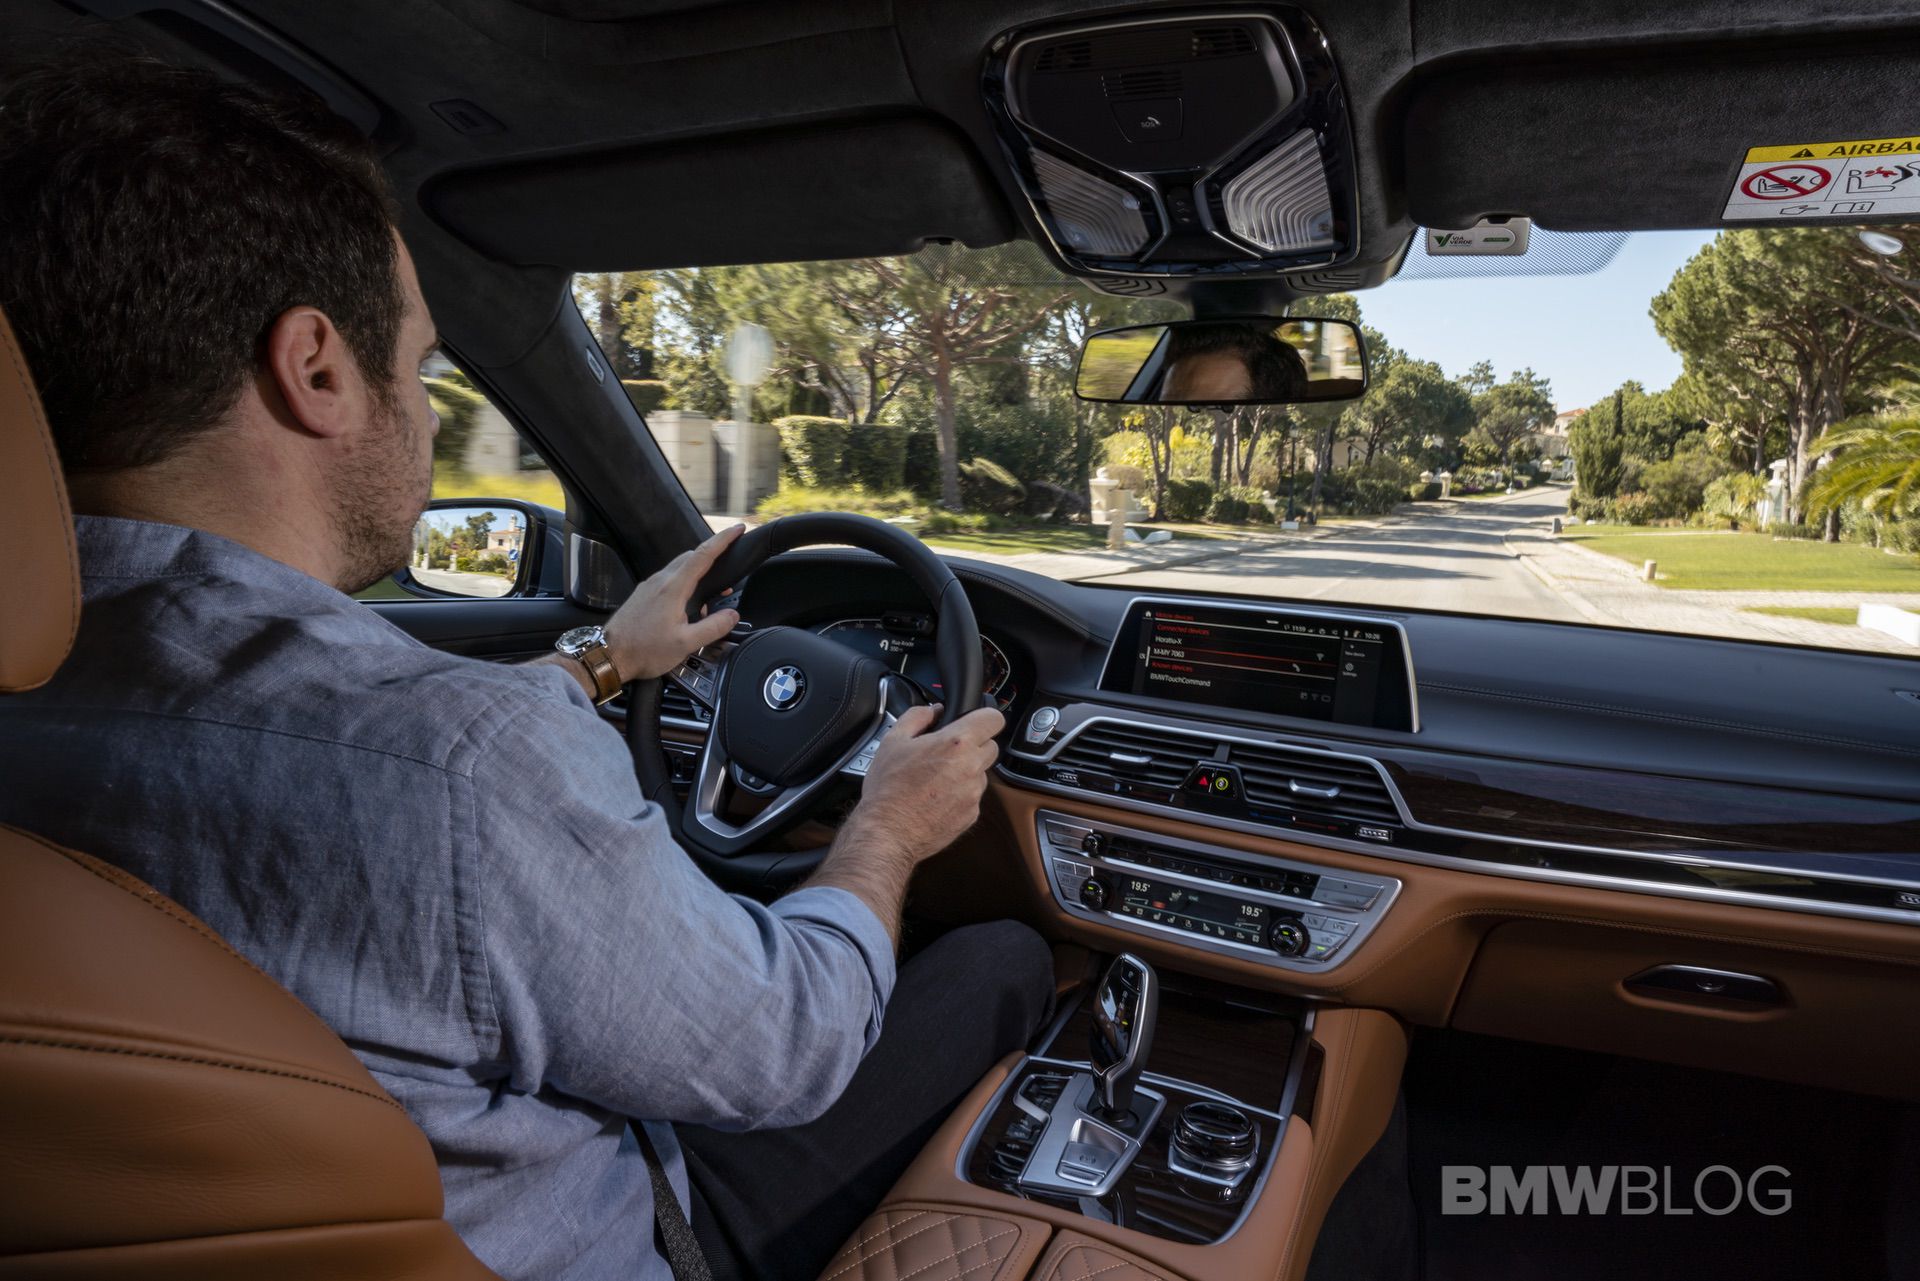 TEST DRIVE: 2019 BMW 745Le Plug-In Hybrid